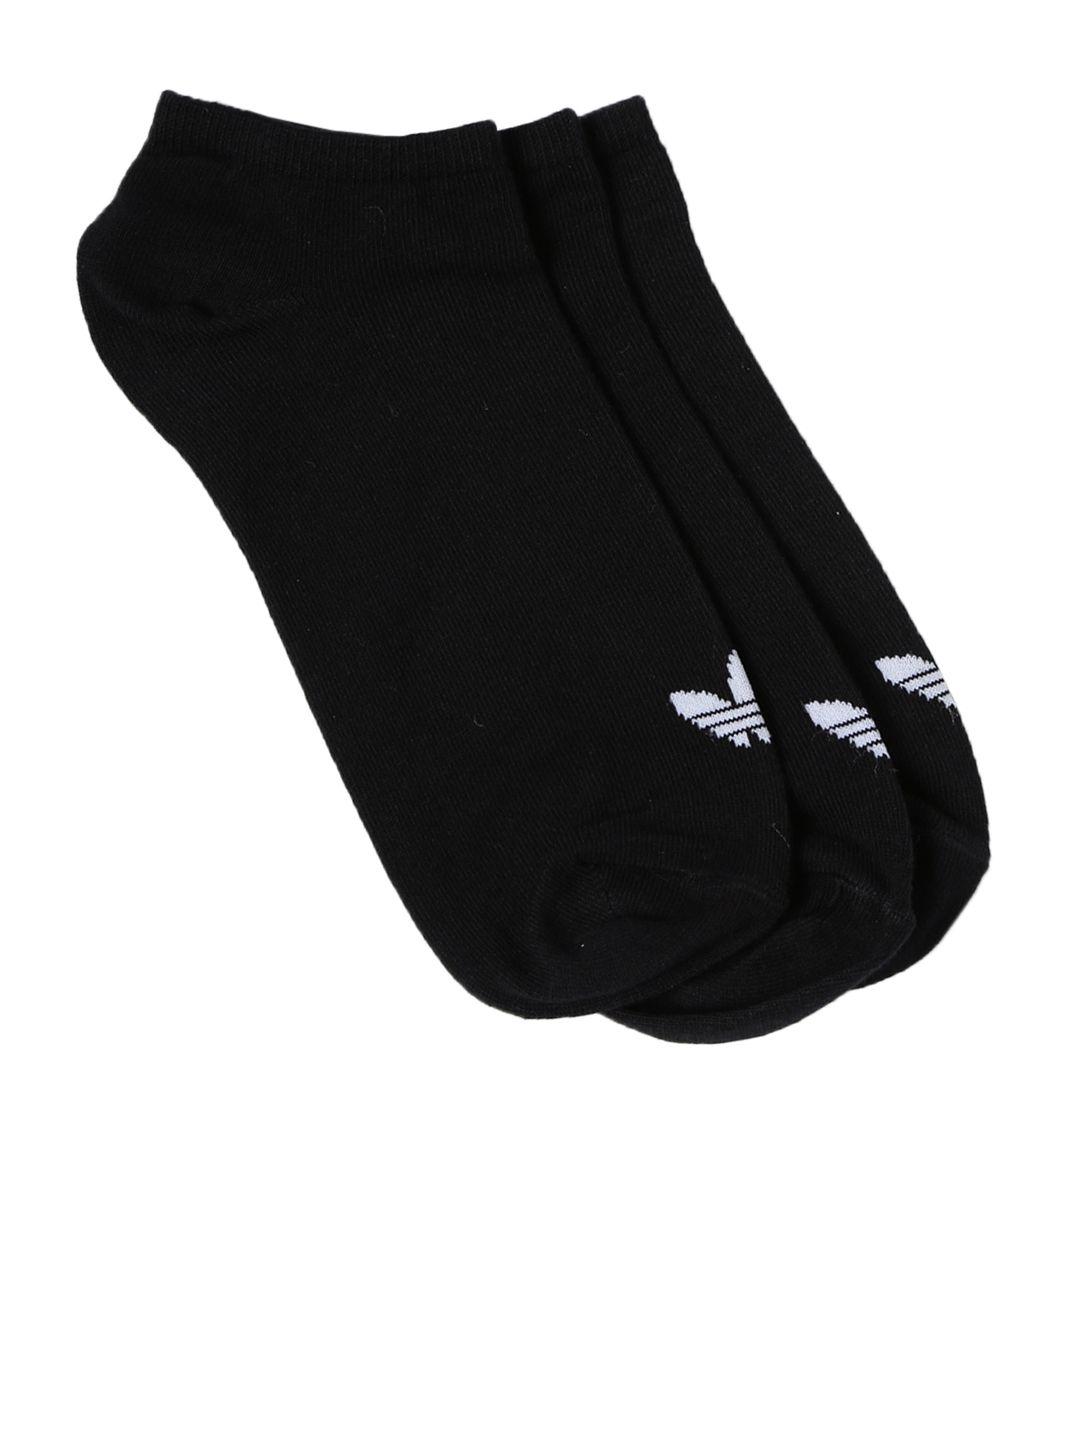 adidas unisex black s20274 ankle-length running socks